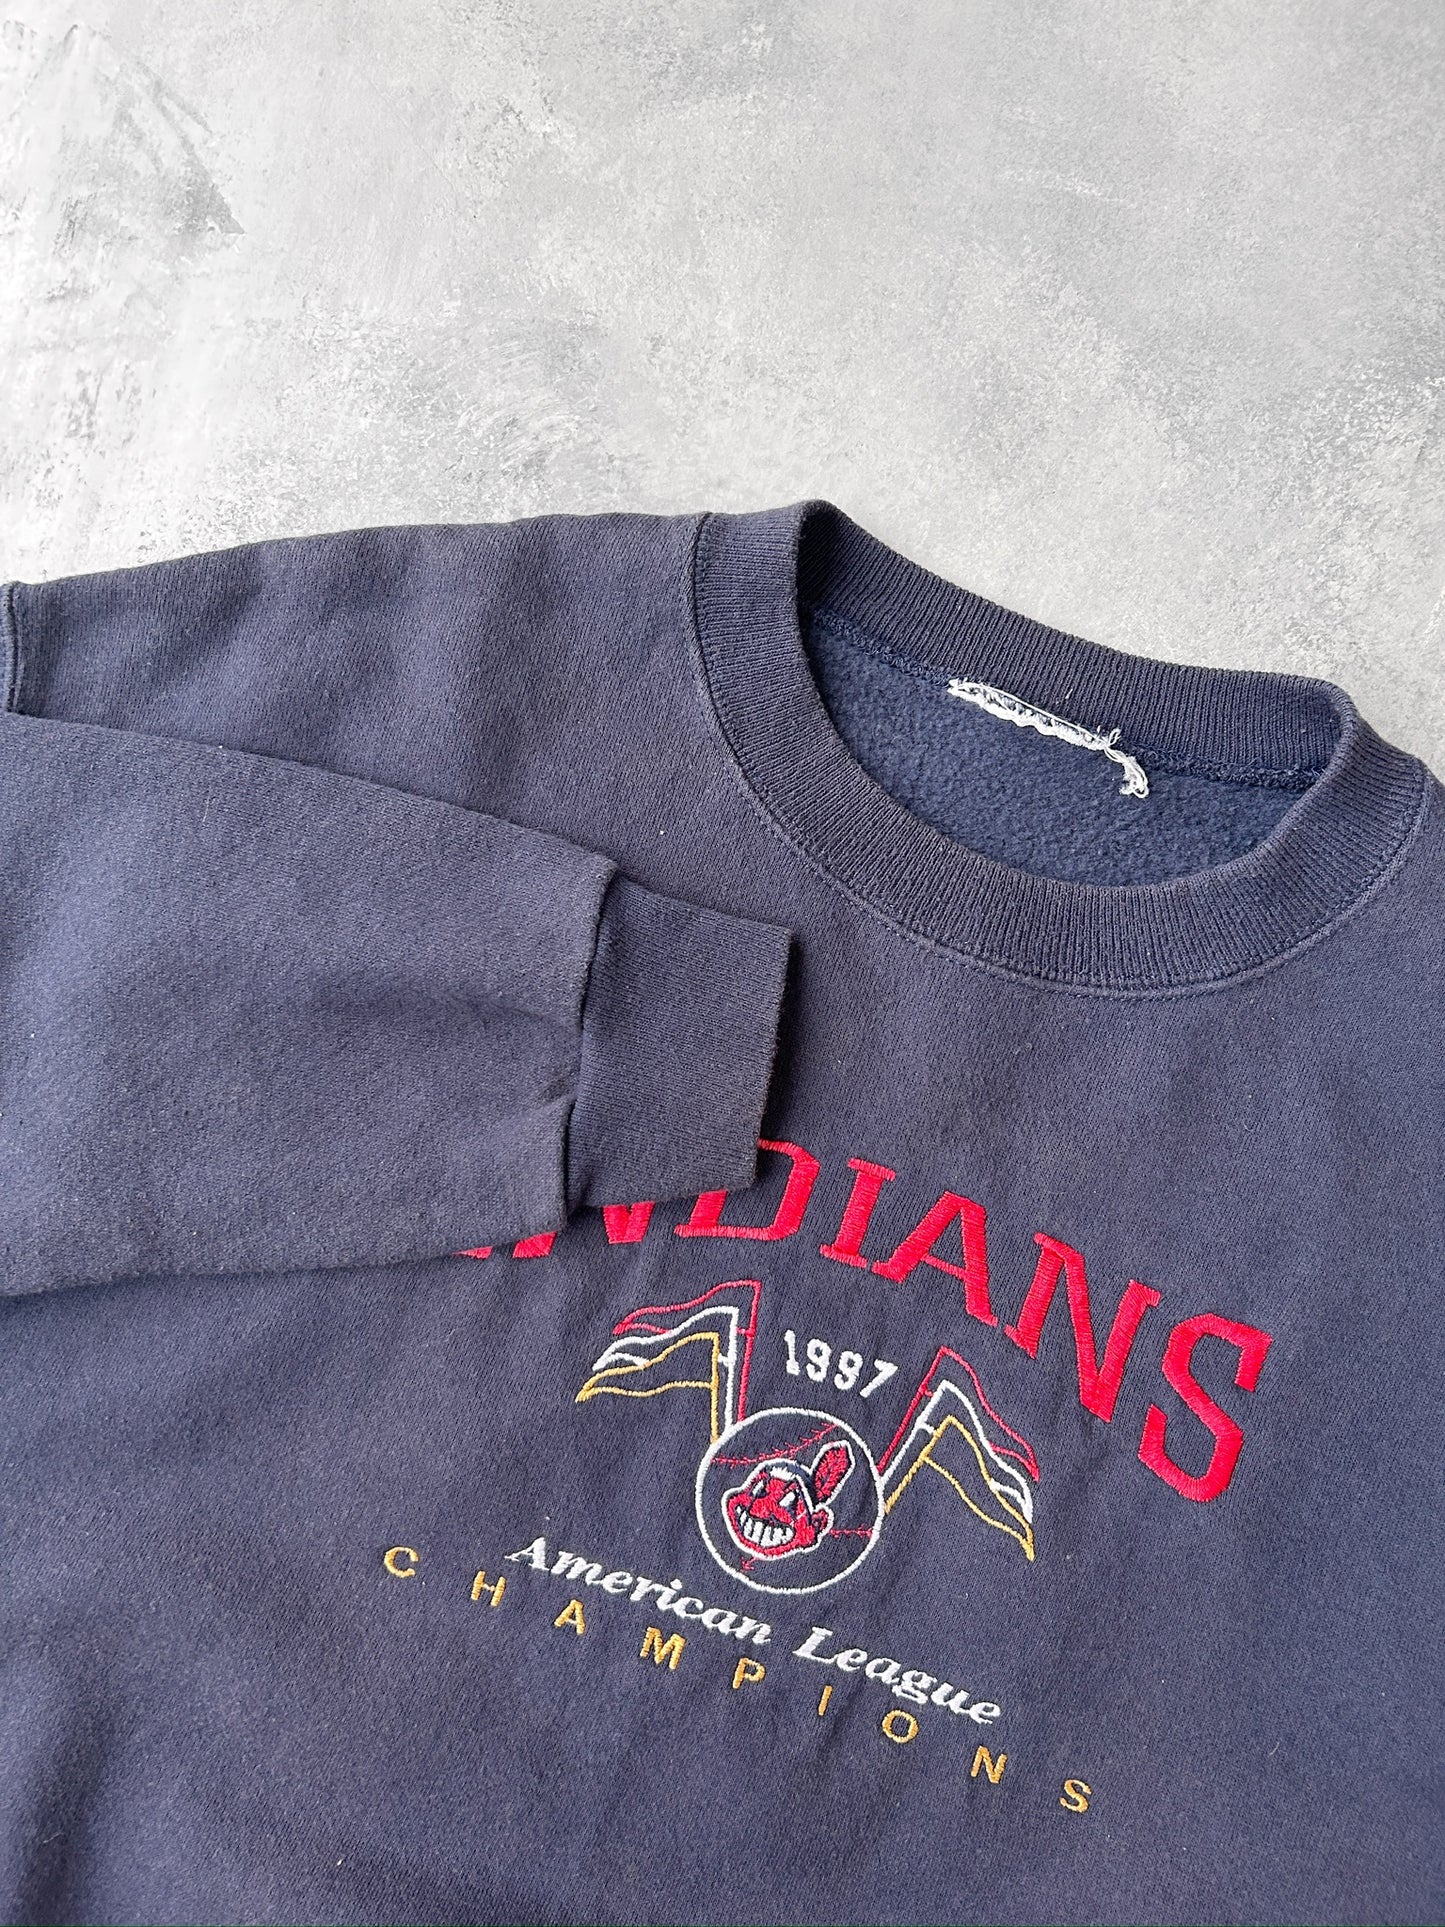 Cleveland Indians Sweatshirt '97 - Large